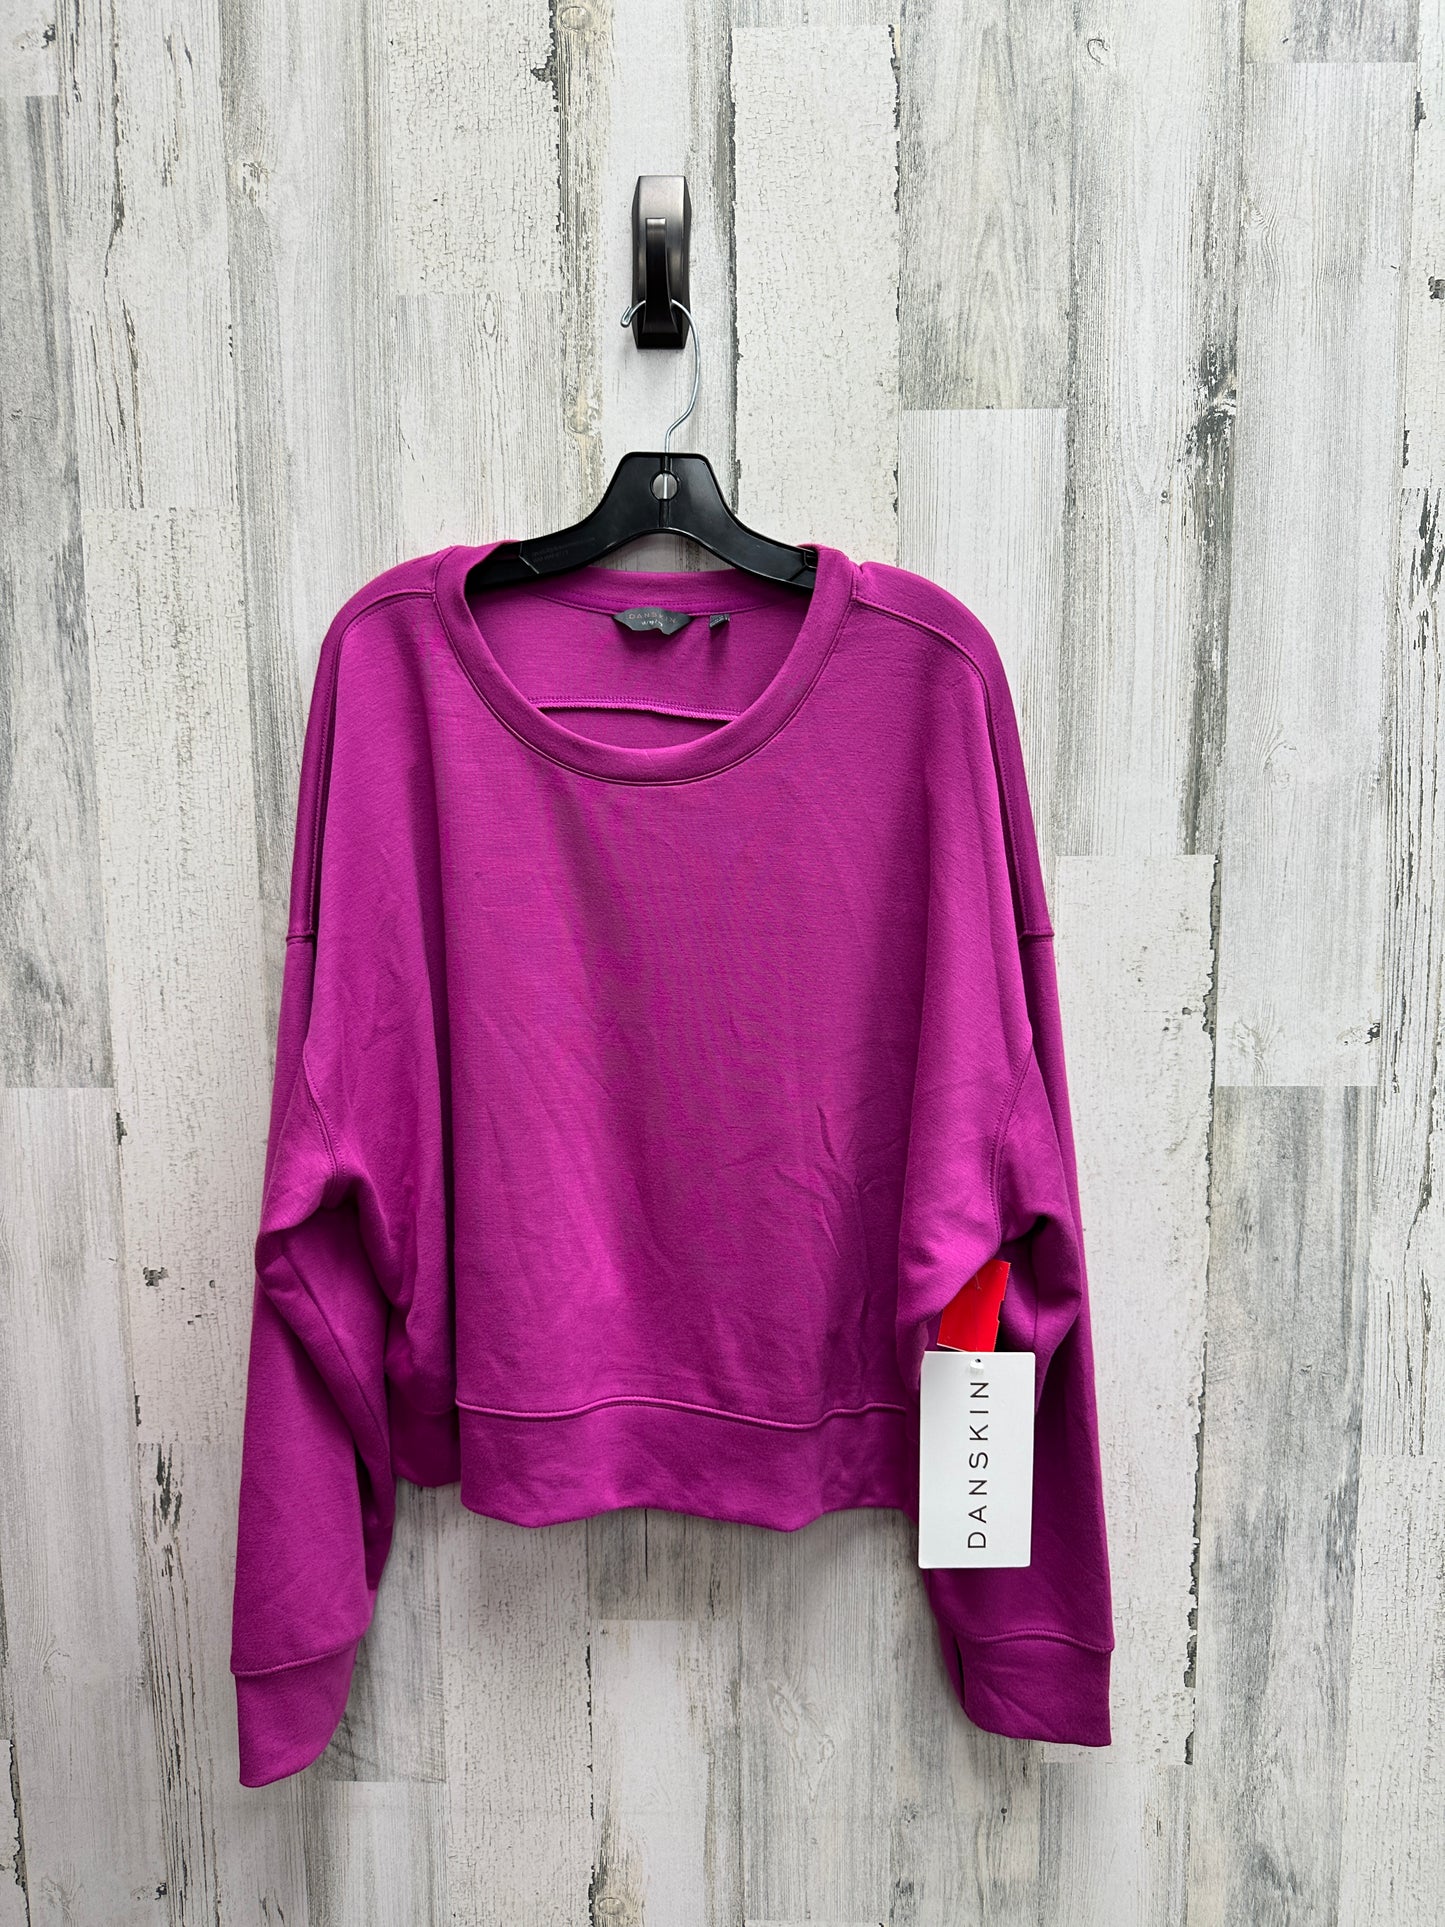 Sweater By Danskin  Size: Xl